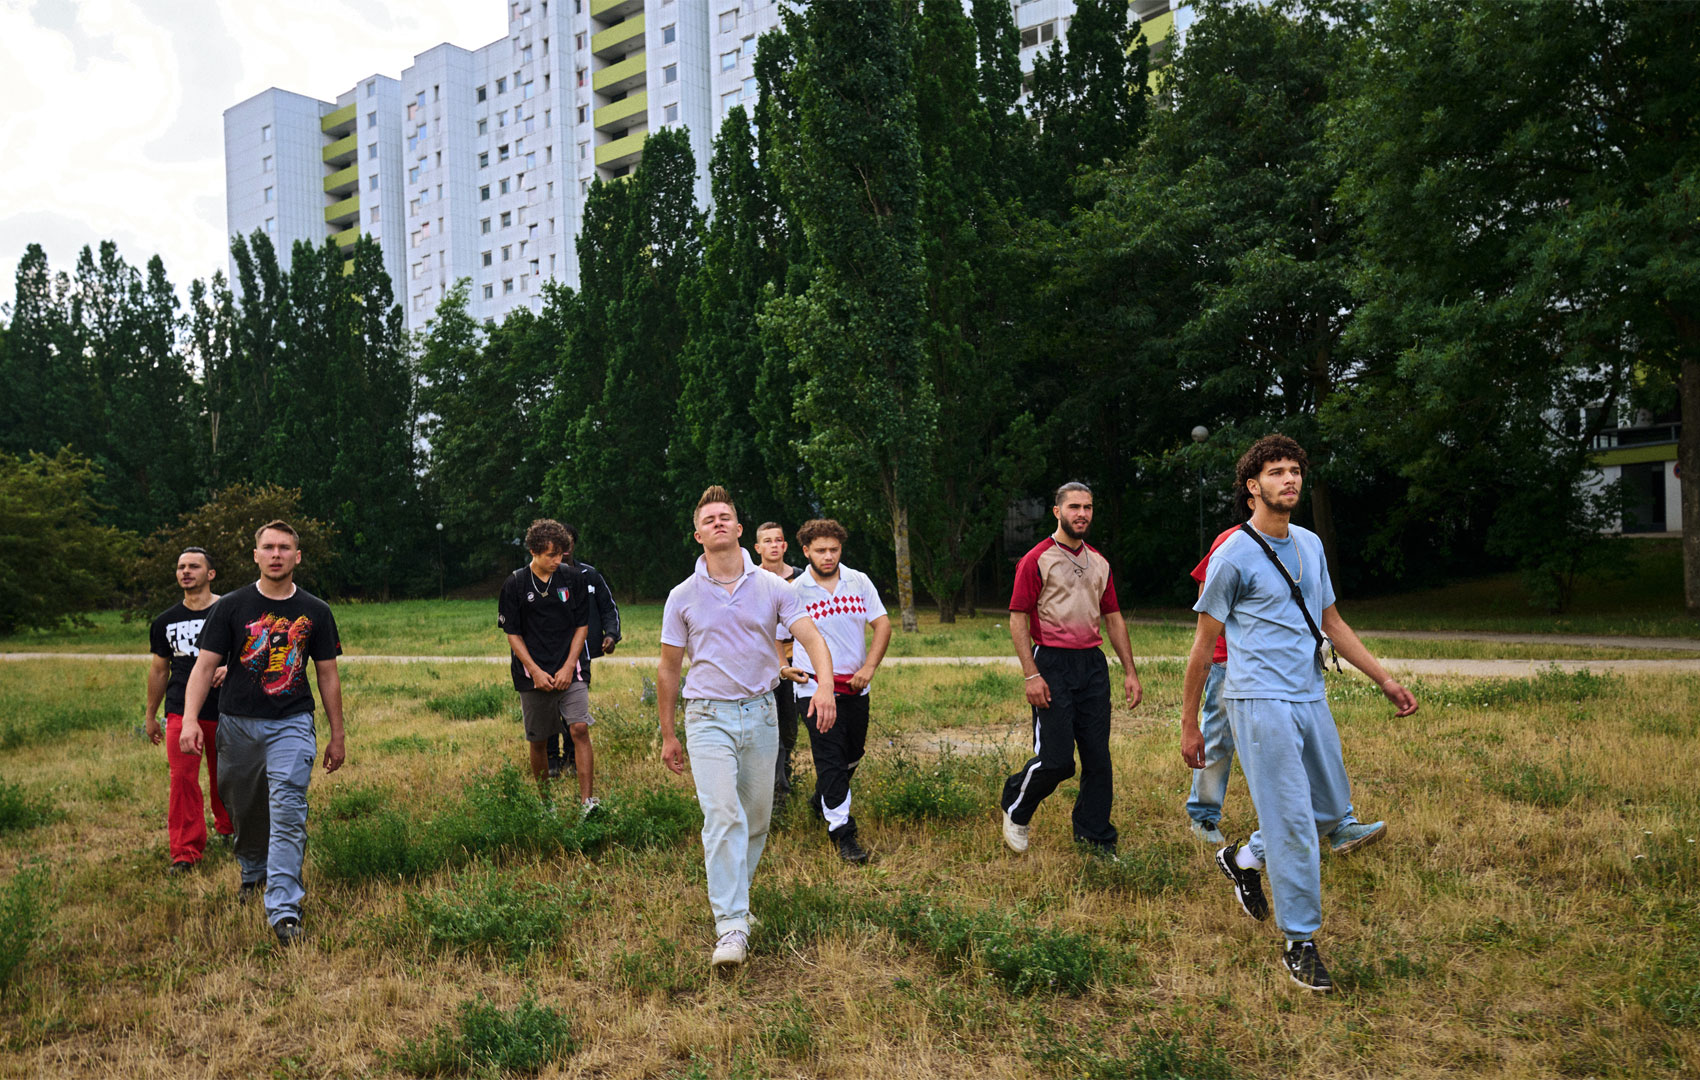 Junge Männer laufen in der Gruppe auf einer Wiese vor einer Hochhaussiedlung.